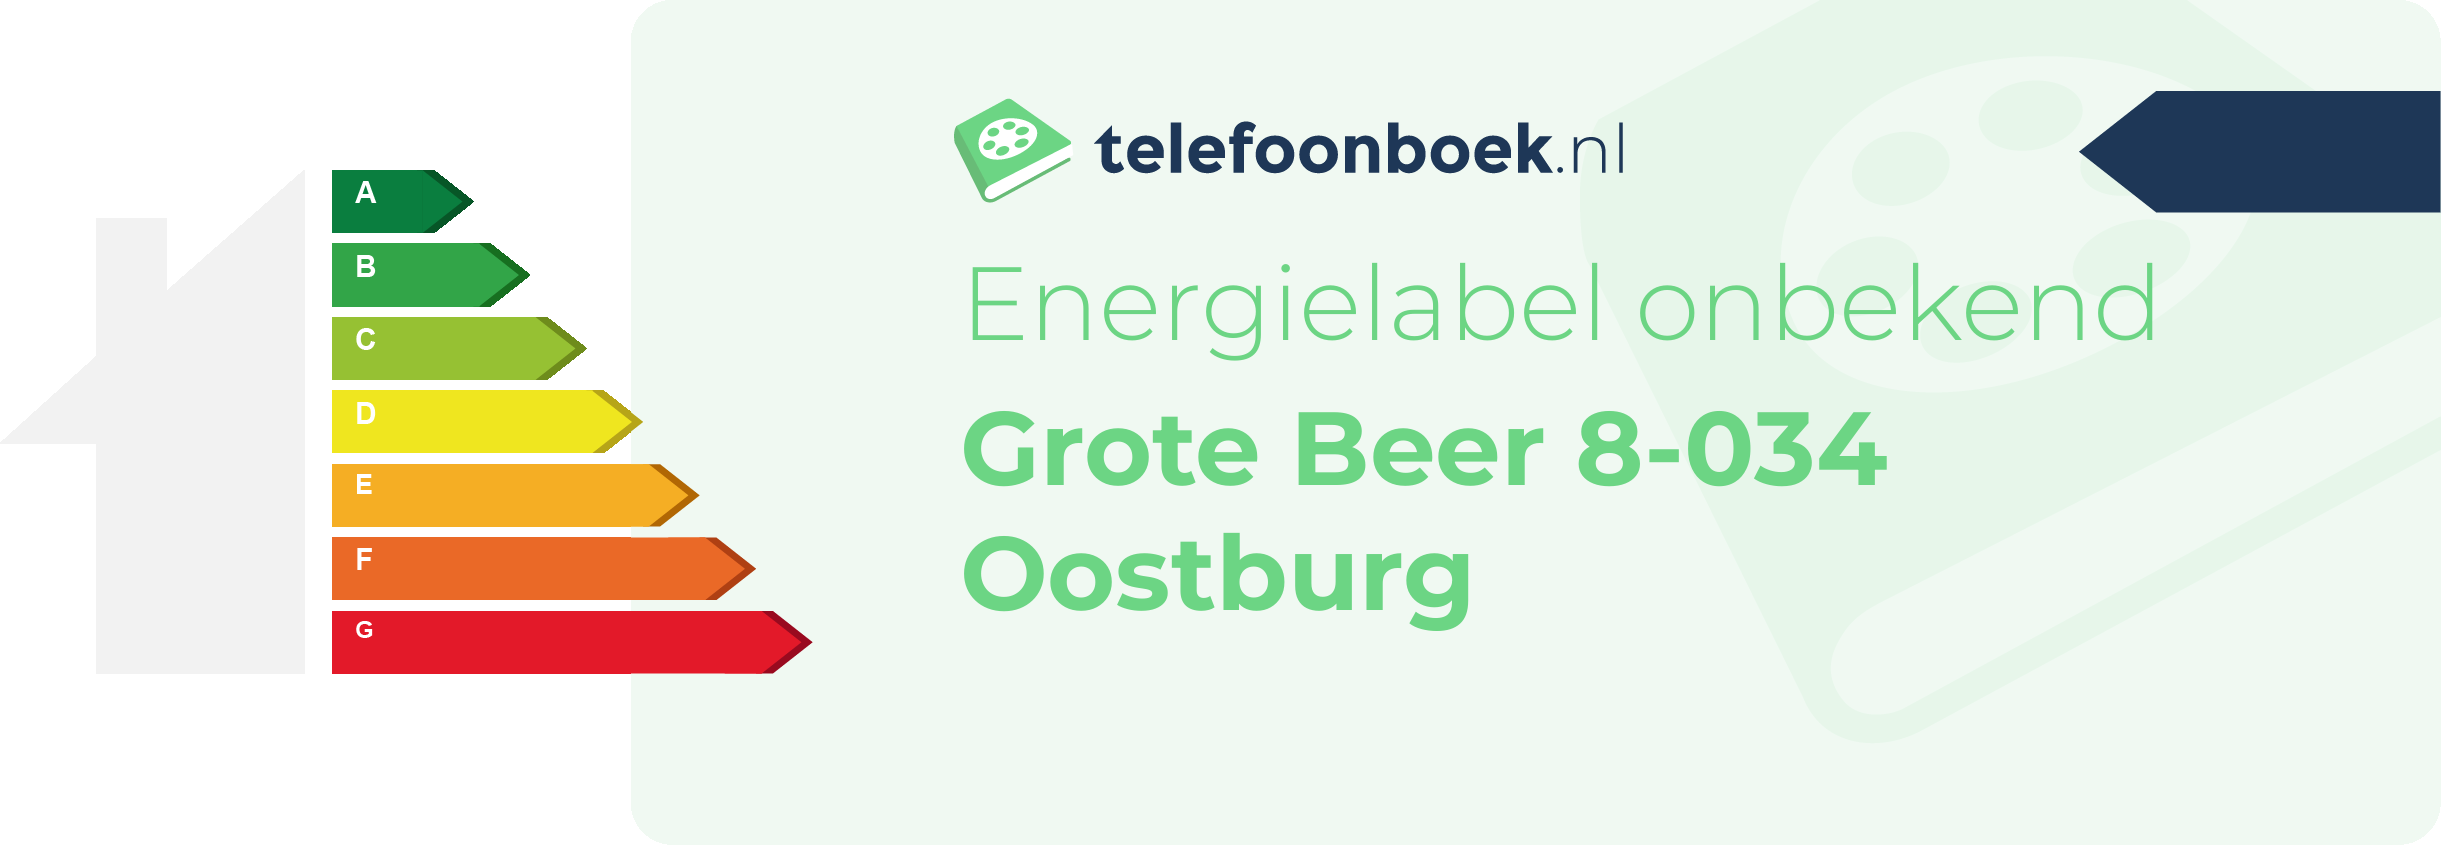 Energielabel Grote Beer 8-034 Oostburg